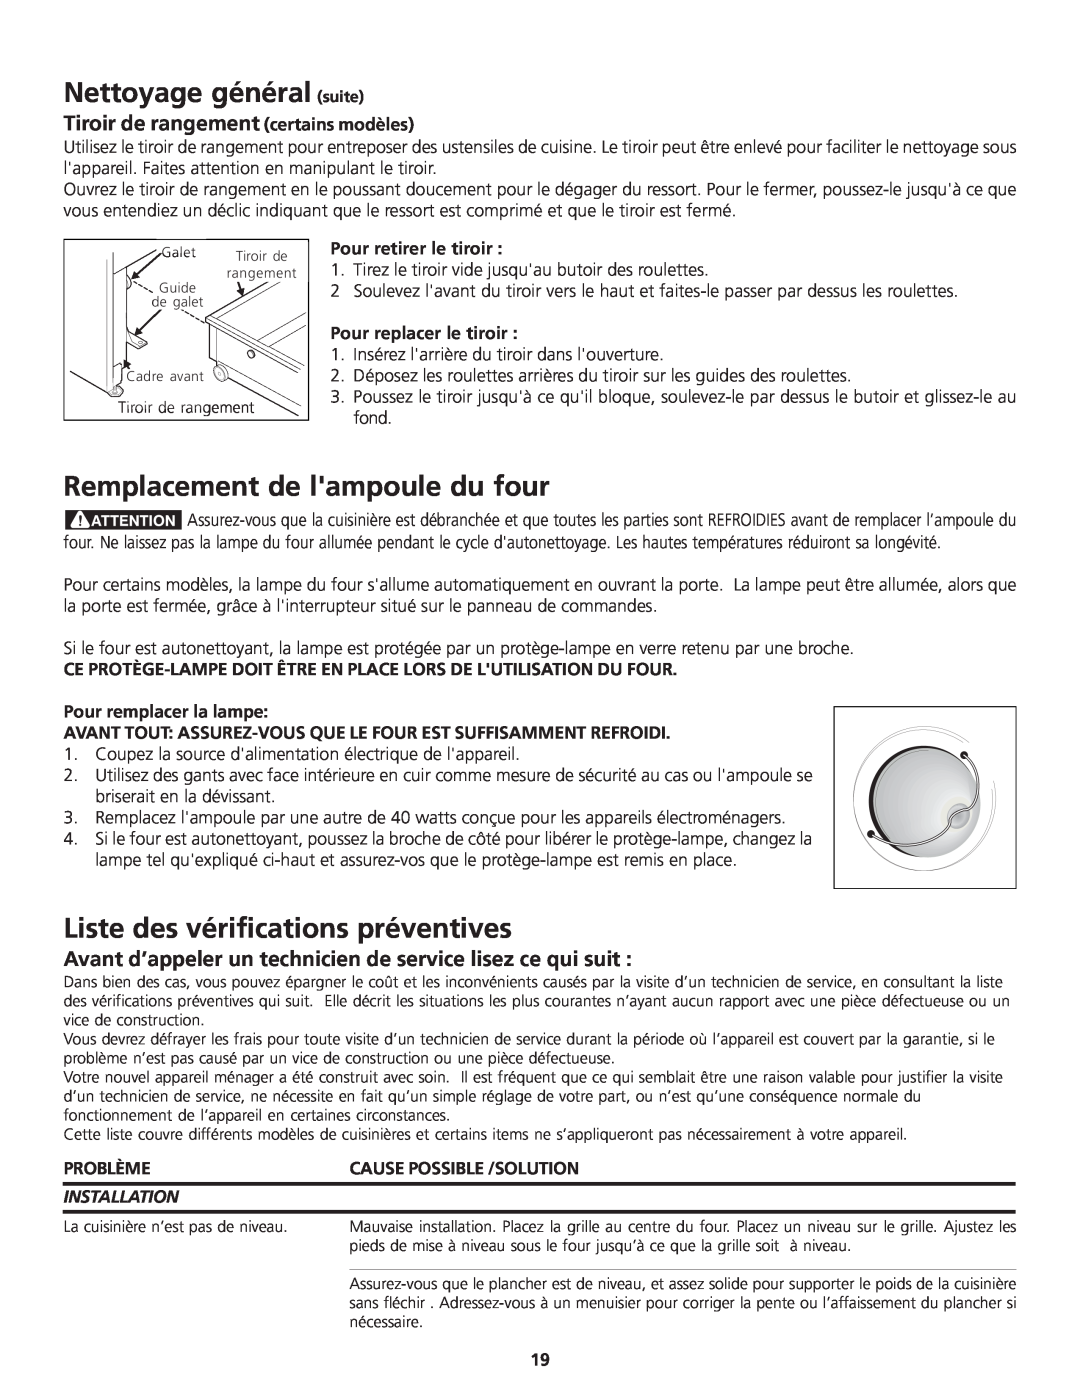 Frigidaire 318200869 manual Remplacement de lampoule du four, Liste des vérifications préventives, Pour retirer le tiroir 